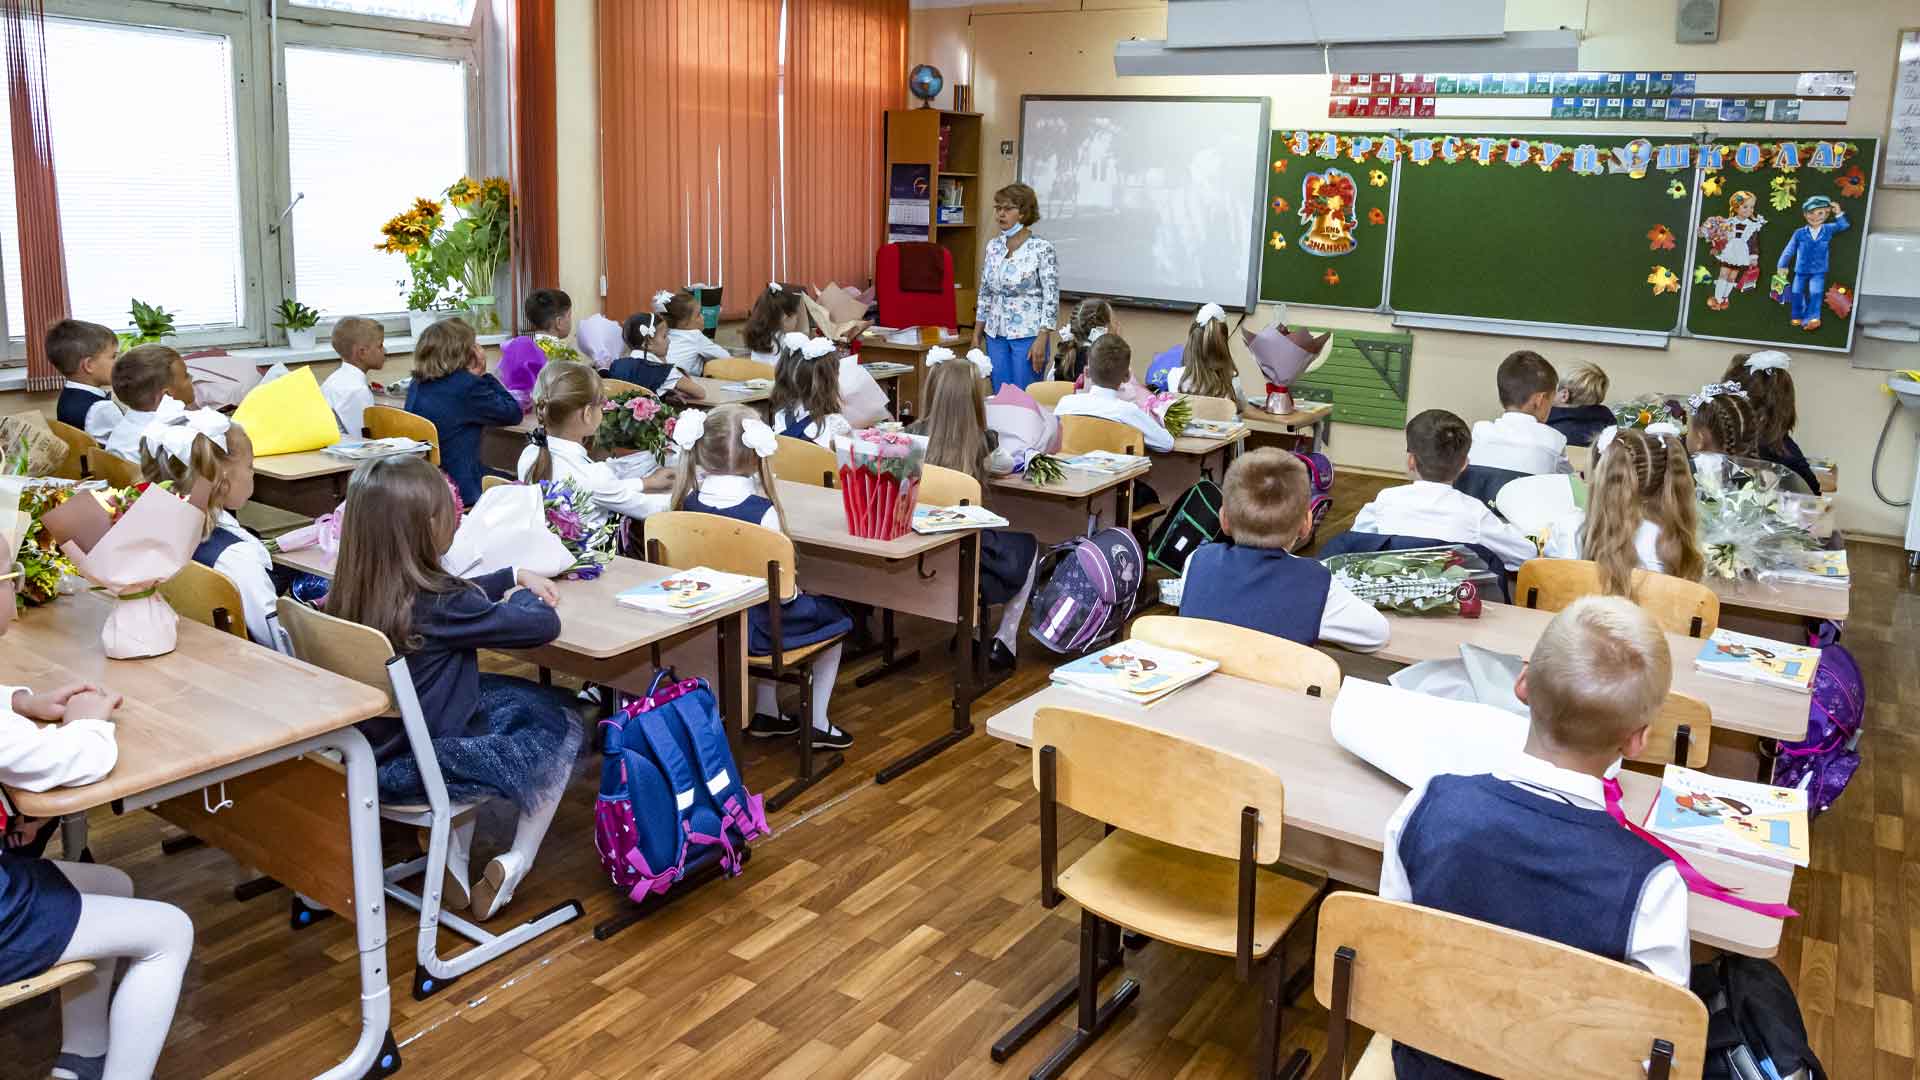 Преподаватели обязаны надевать СИЗы при выходе из класса Фото: © GLOBAL LOOK press / Konstantin Kokoshkin